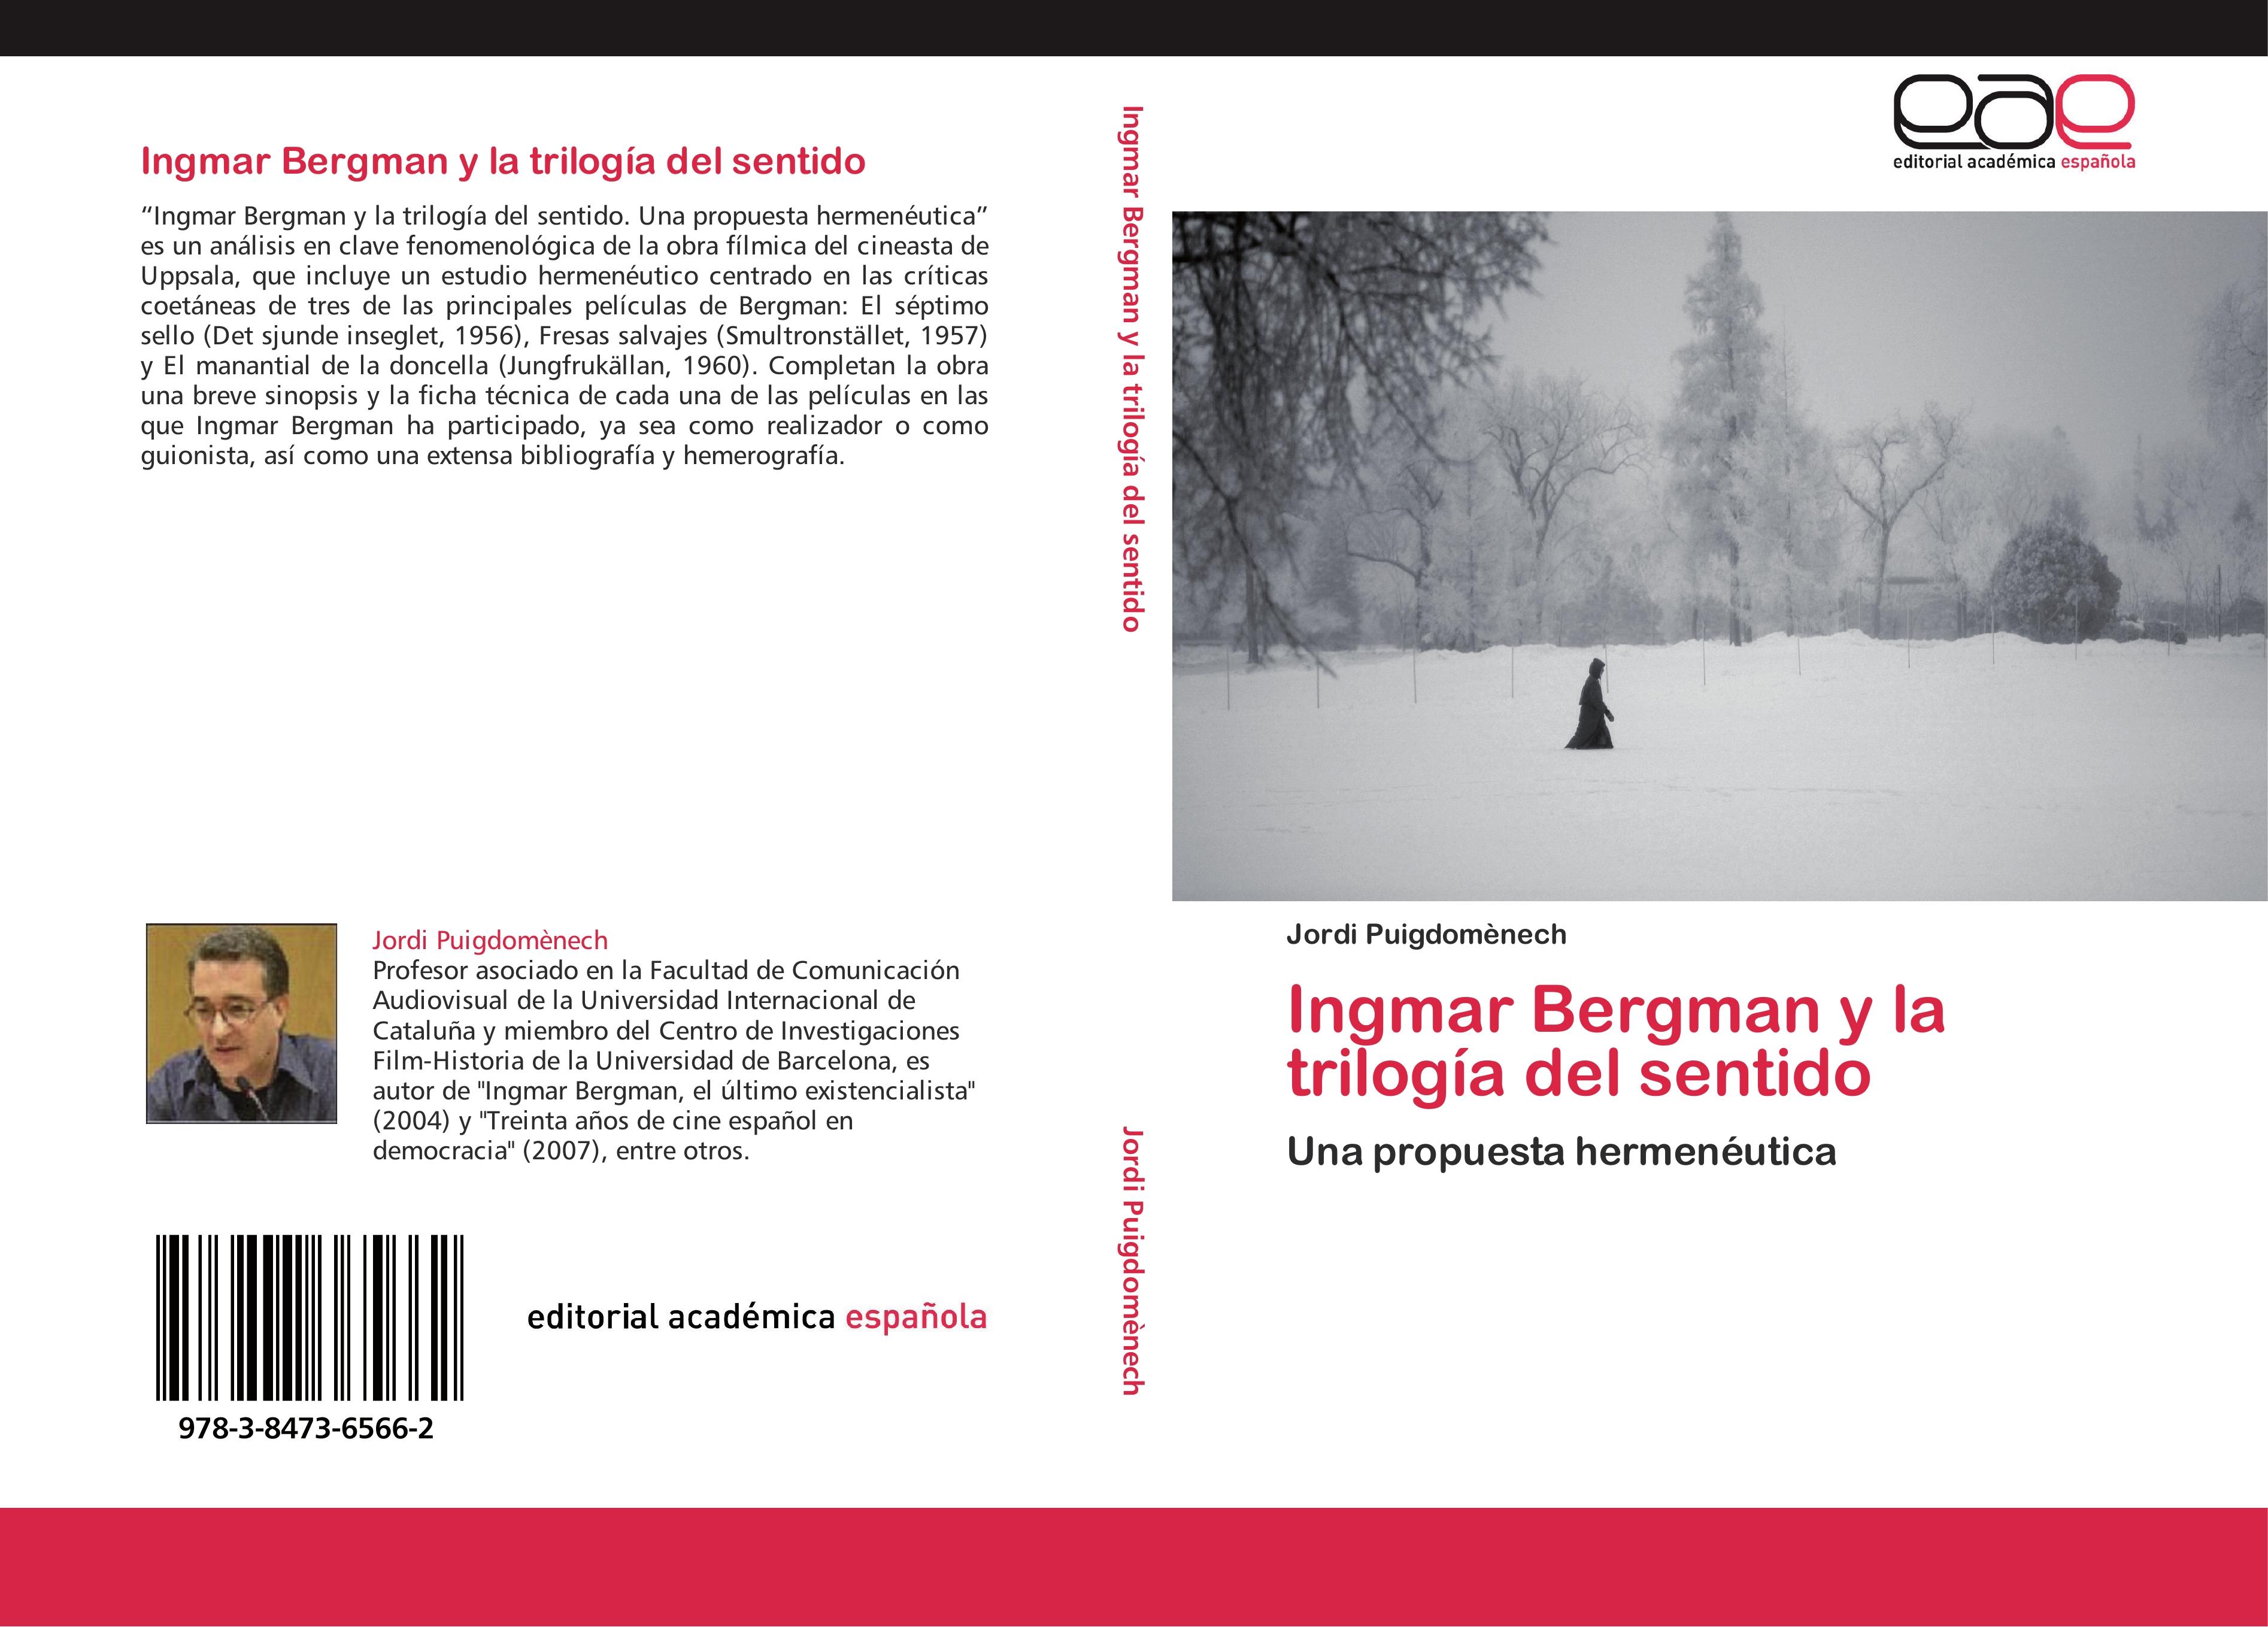 Ingmar Bergman y la trilogía del sentido - Jordi Puigdomènech